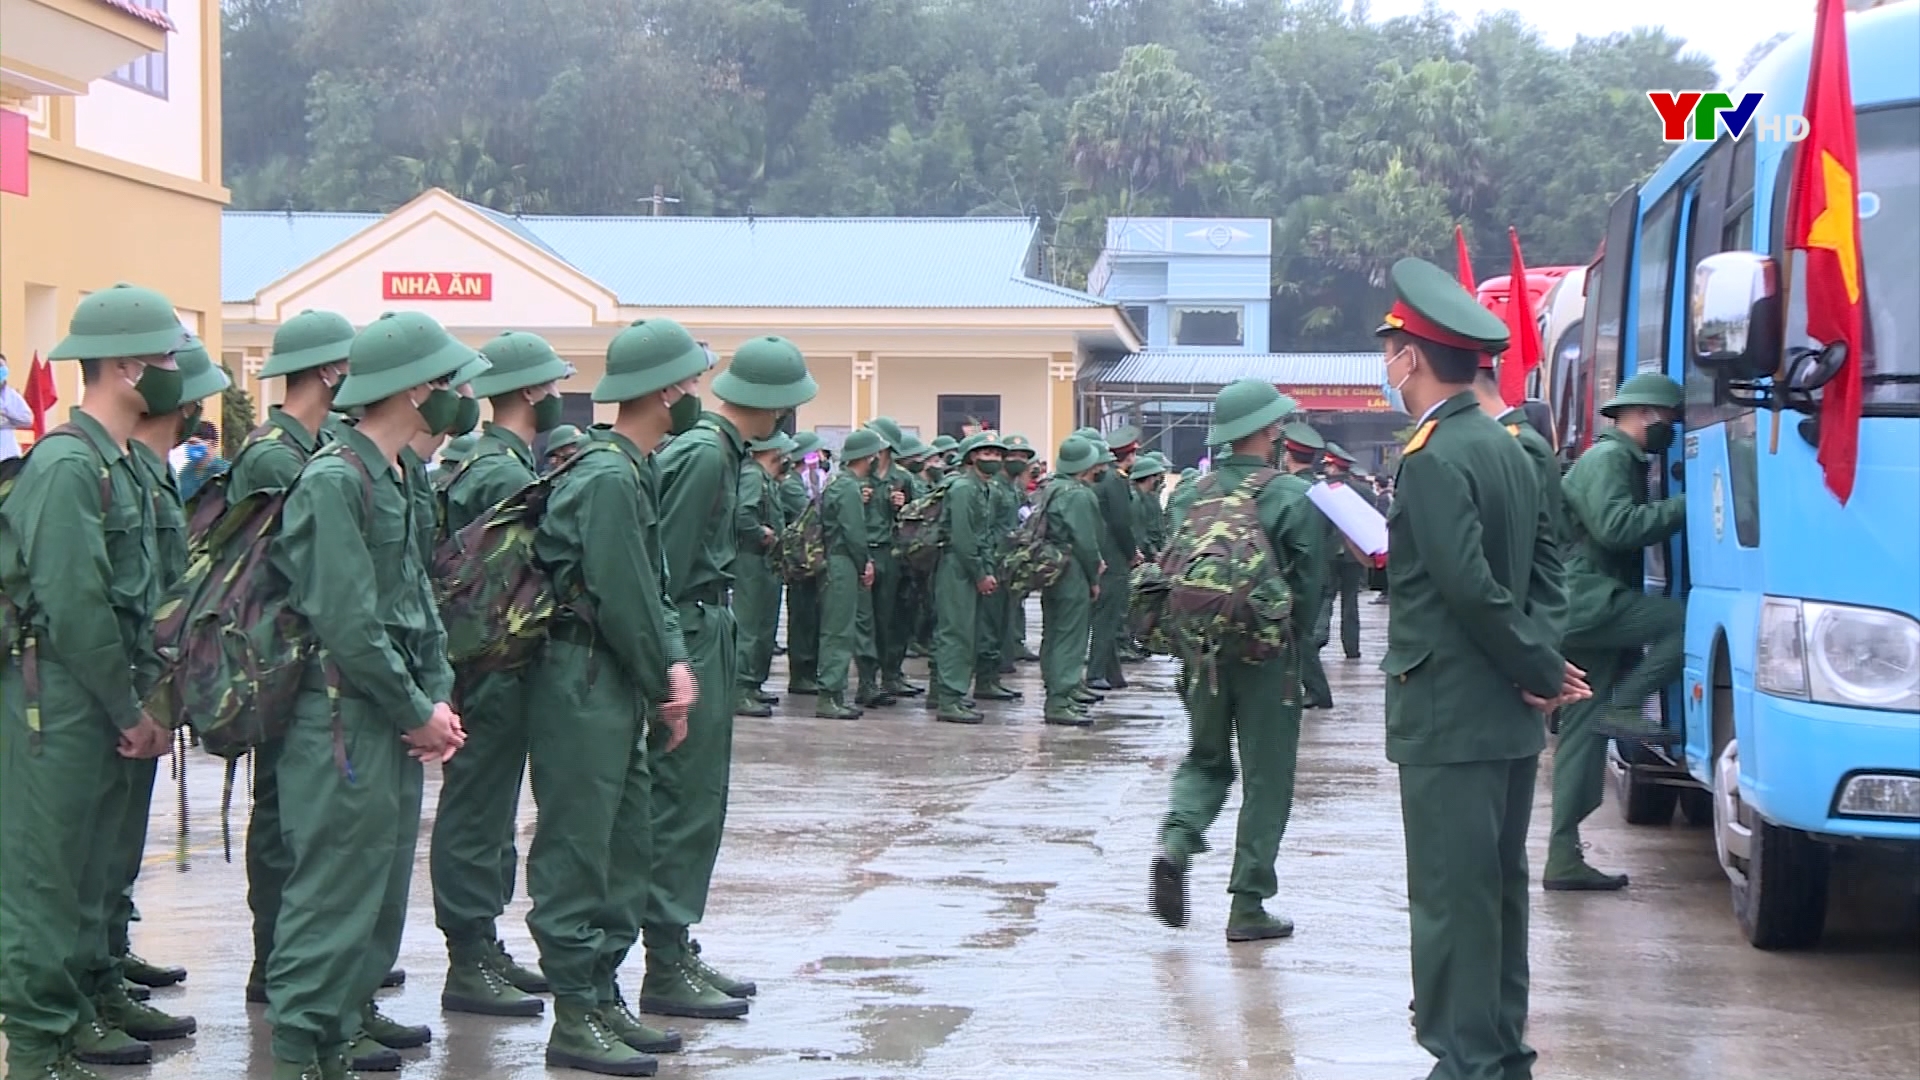 950 tân binh của tỉnh Yên Bái lên đường làm nhiệm vụ bảo vệ Tổ quốc